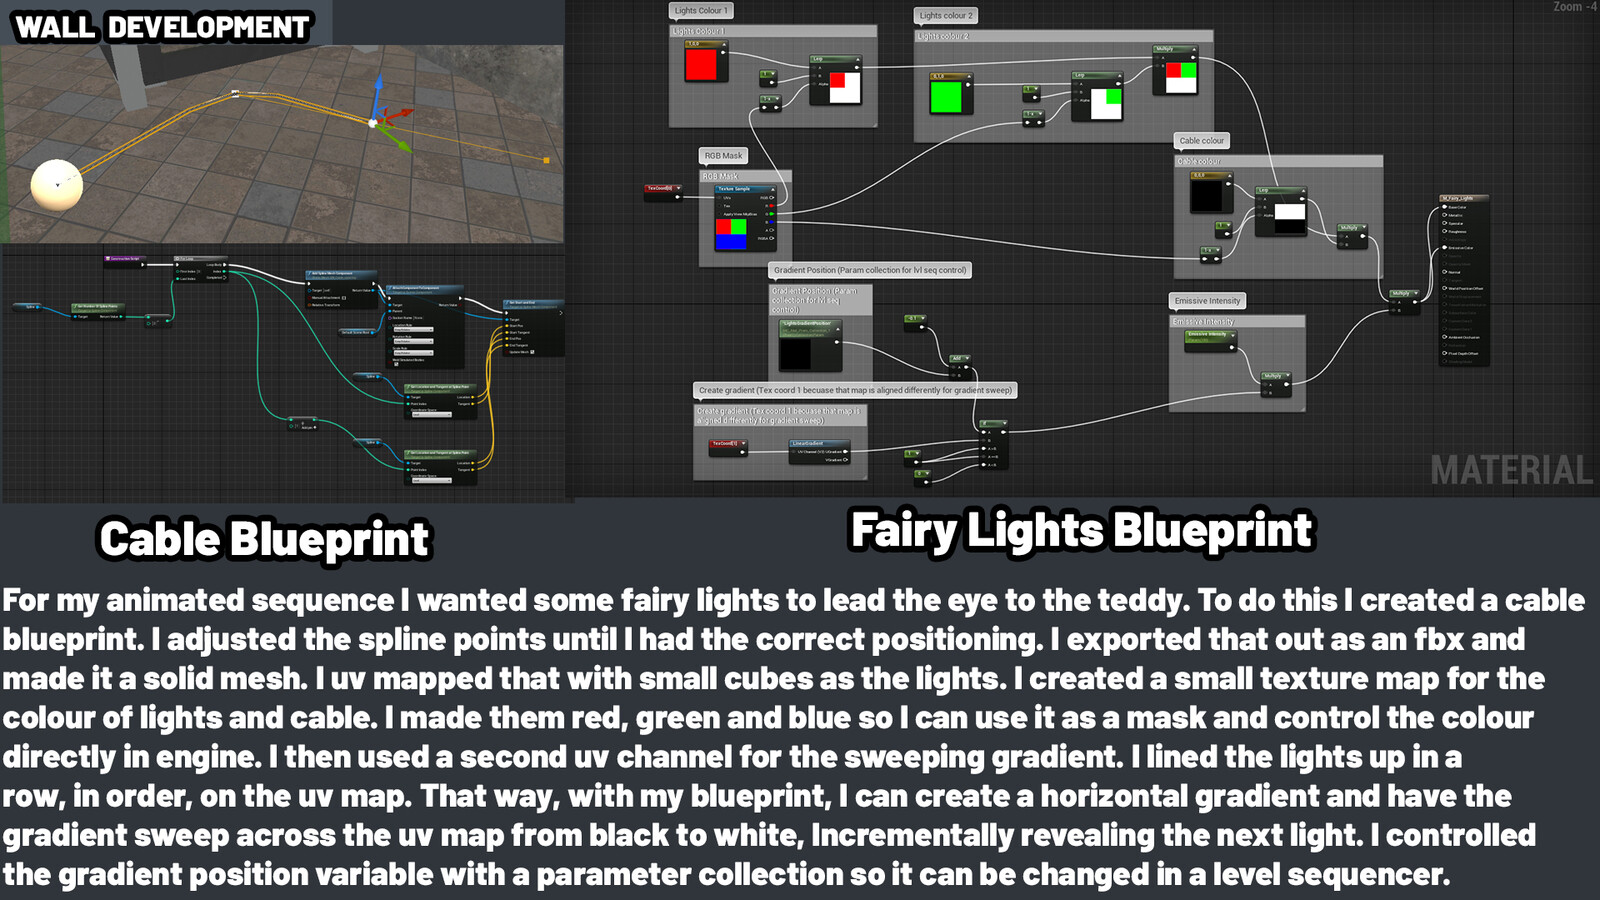 Fairy Lights blueprint - Mask texture 128x128